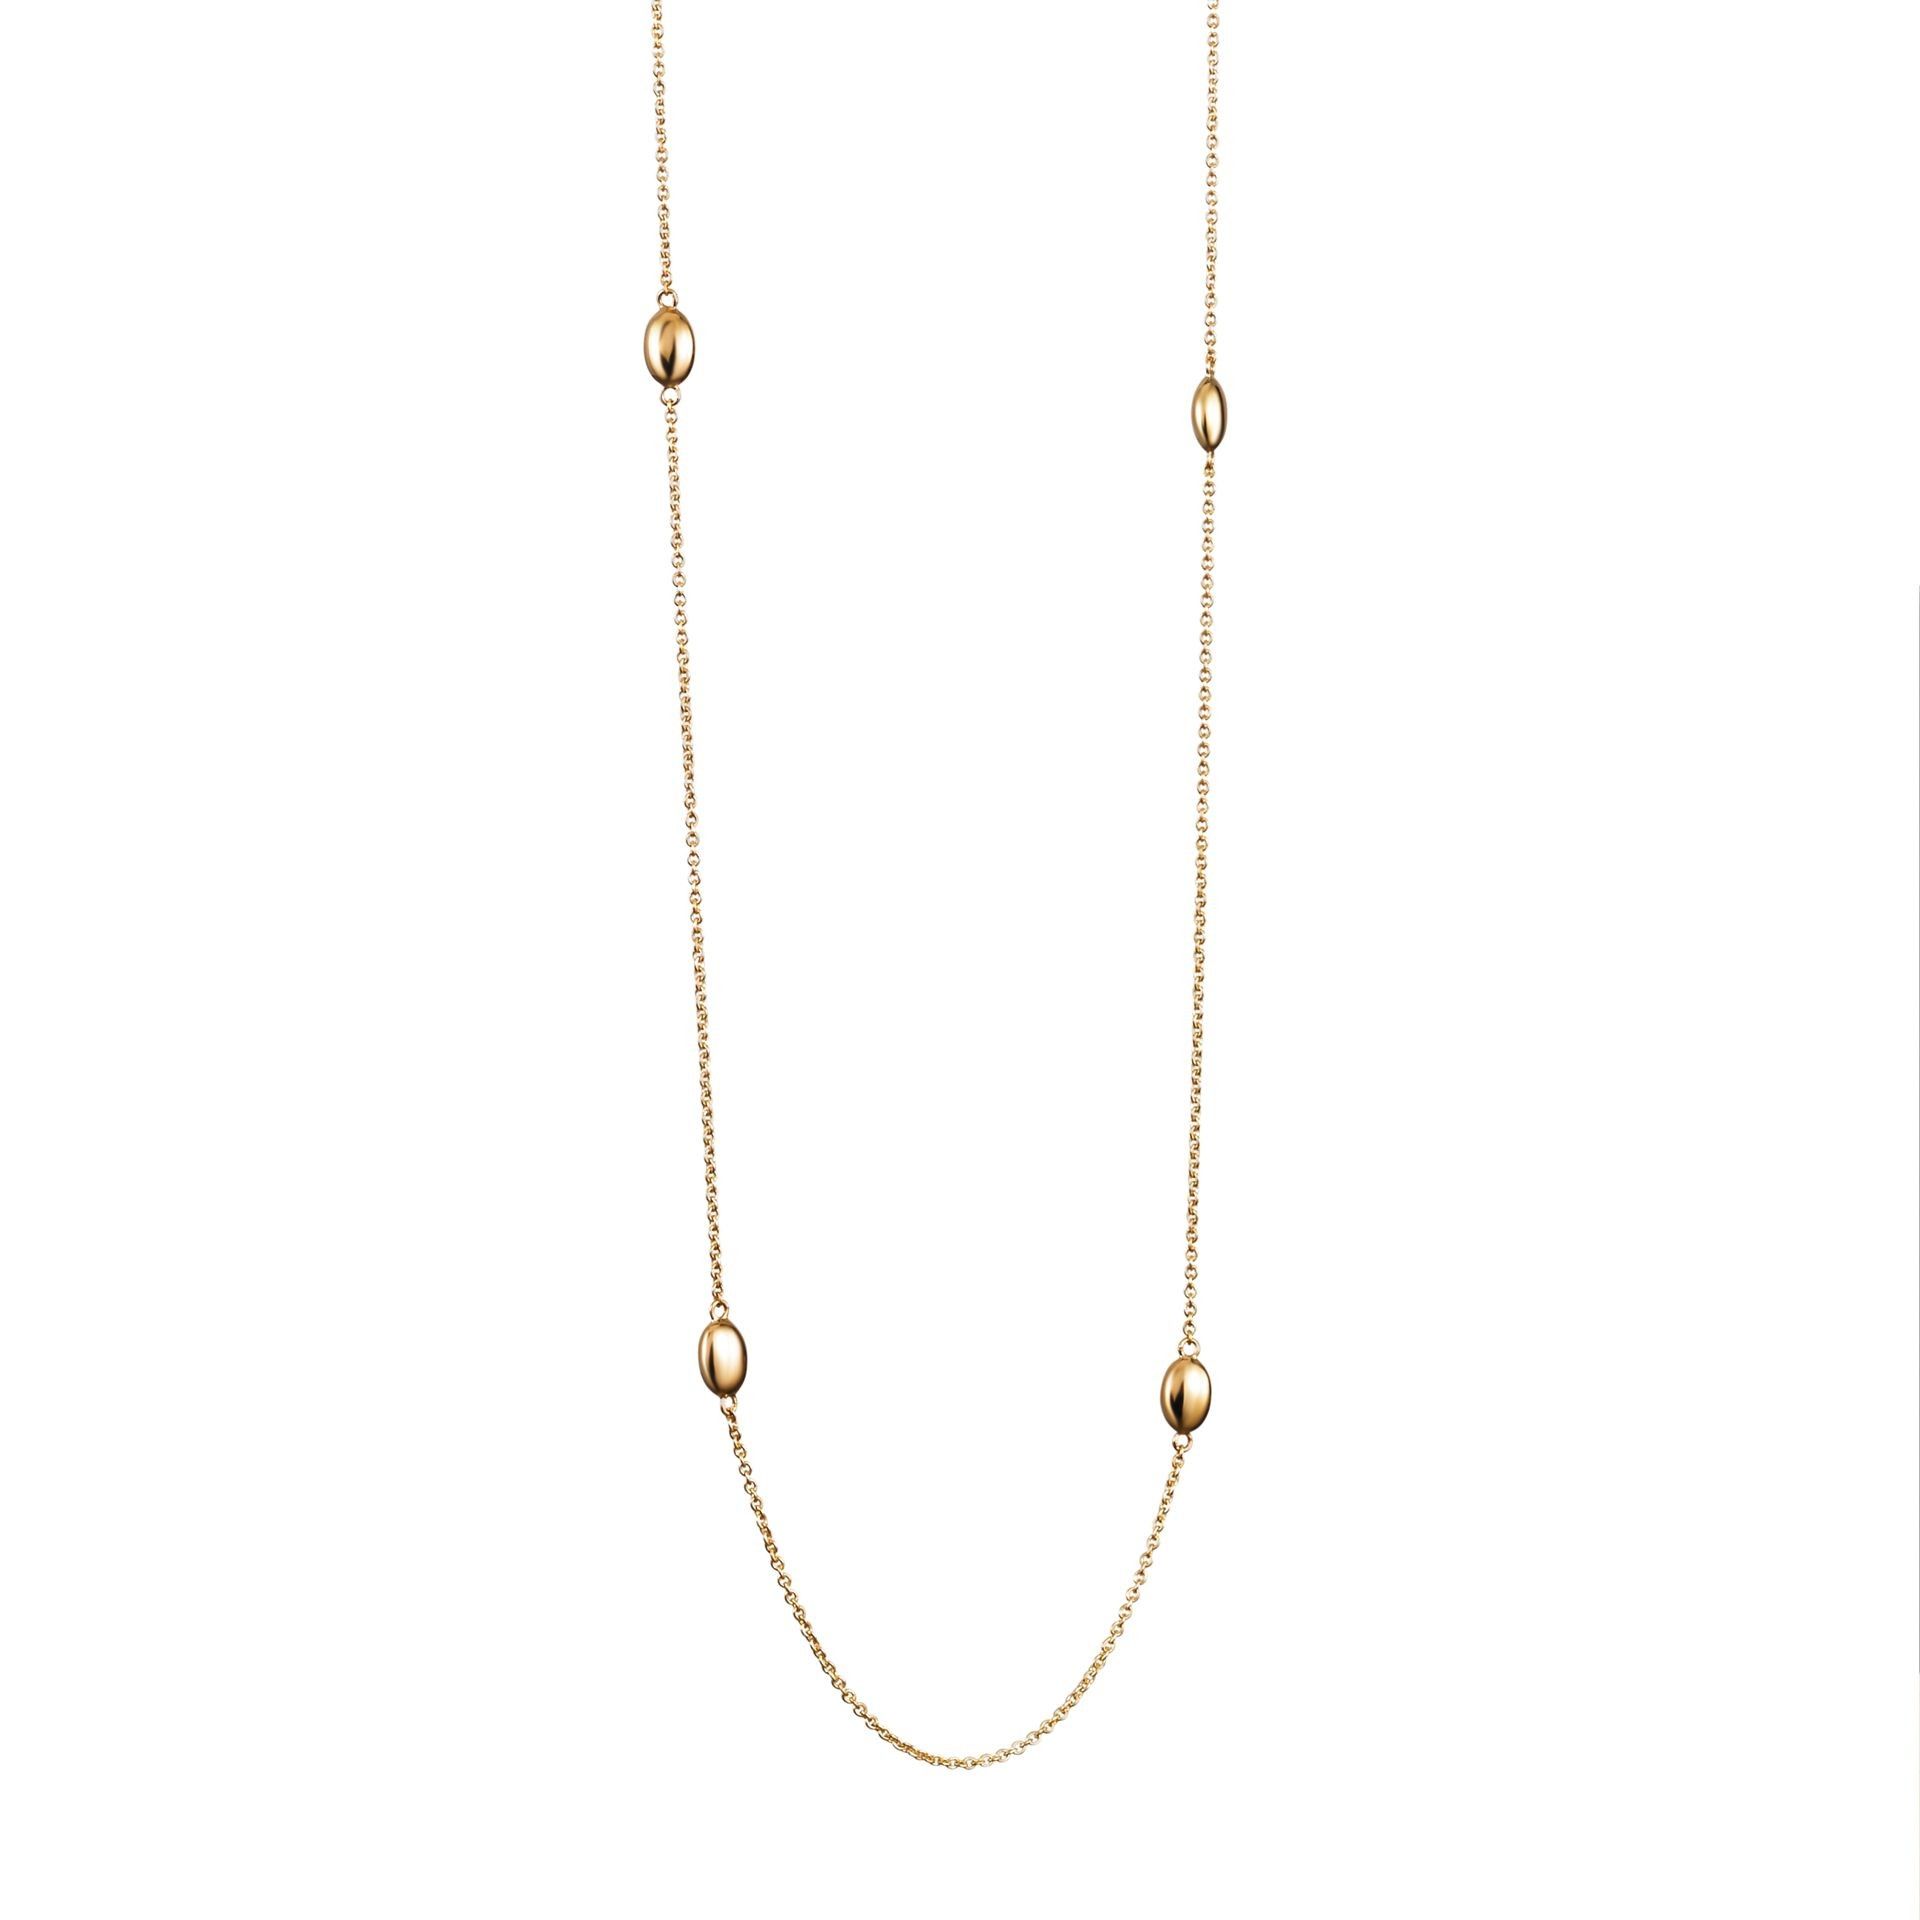 Efva Attling Love Bead Long Necklace - Gold 85 CM - GULD